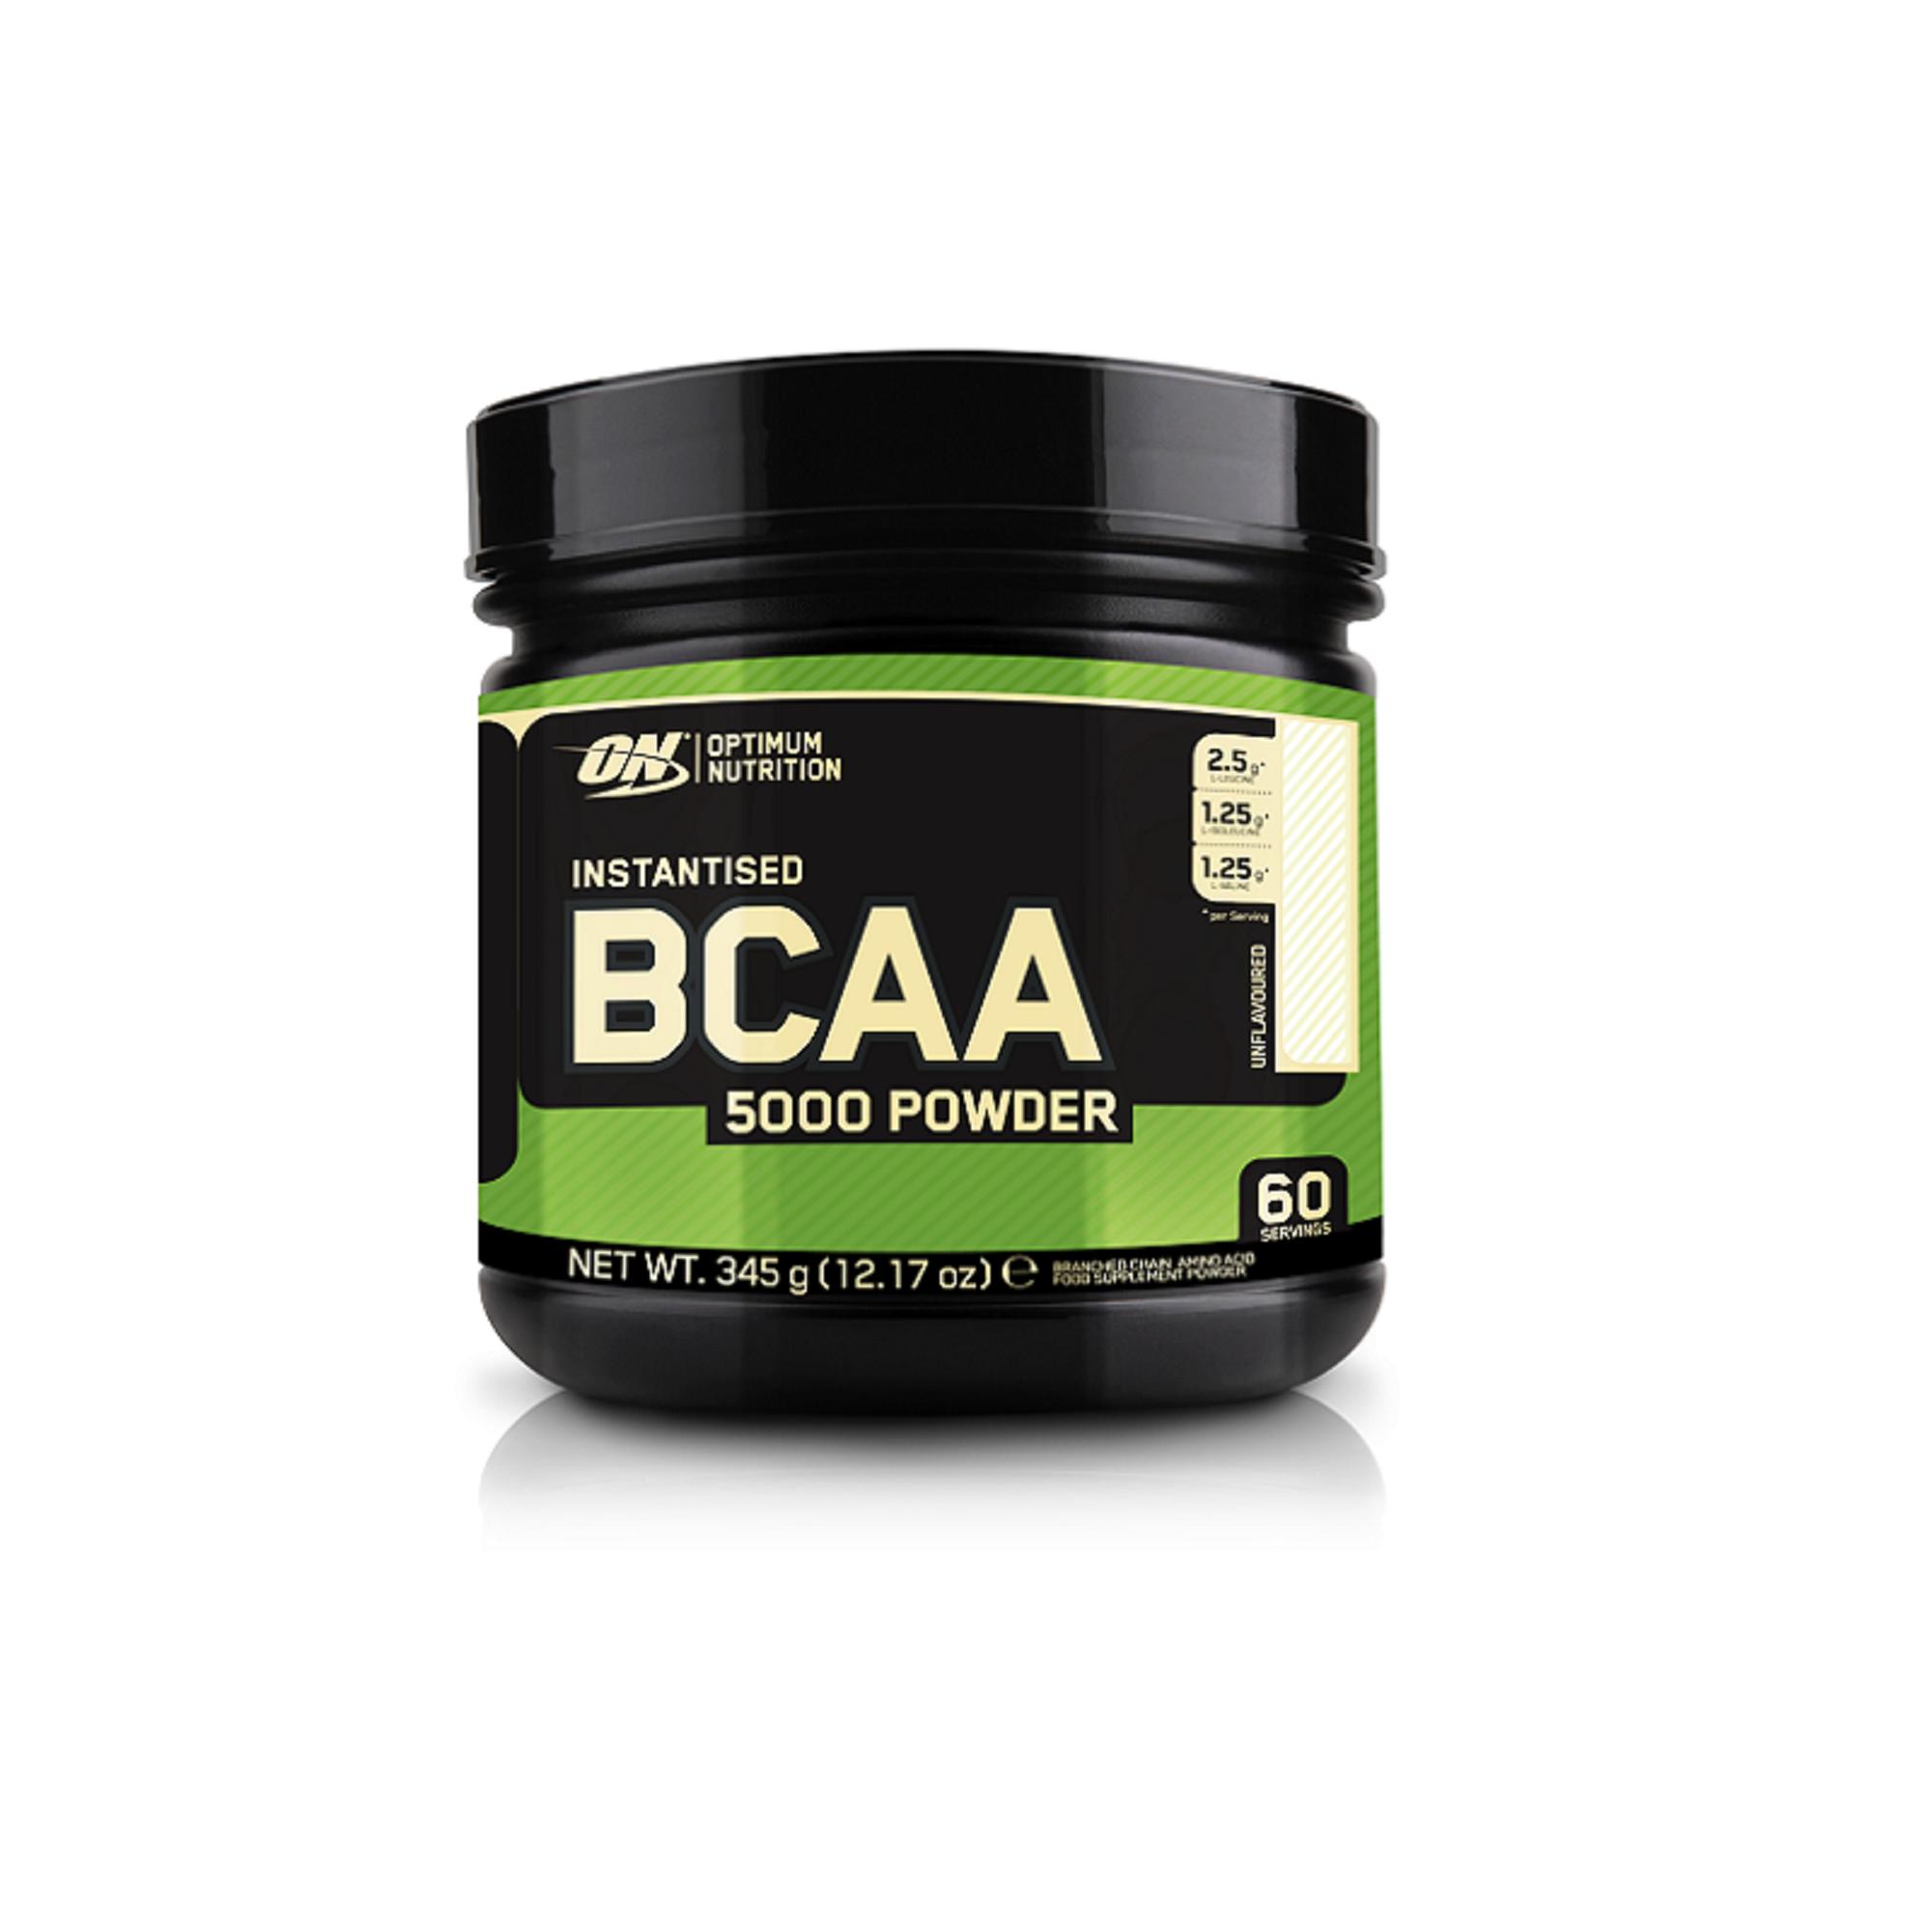 Optimum nutrition powder. ВСАА Optimum Nutrition. БЦАА Optimum Nutrition. BCAA Optimum Nutrition. BCAA Optimum Nutrition BCAA Powder.